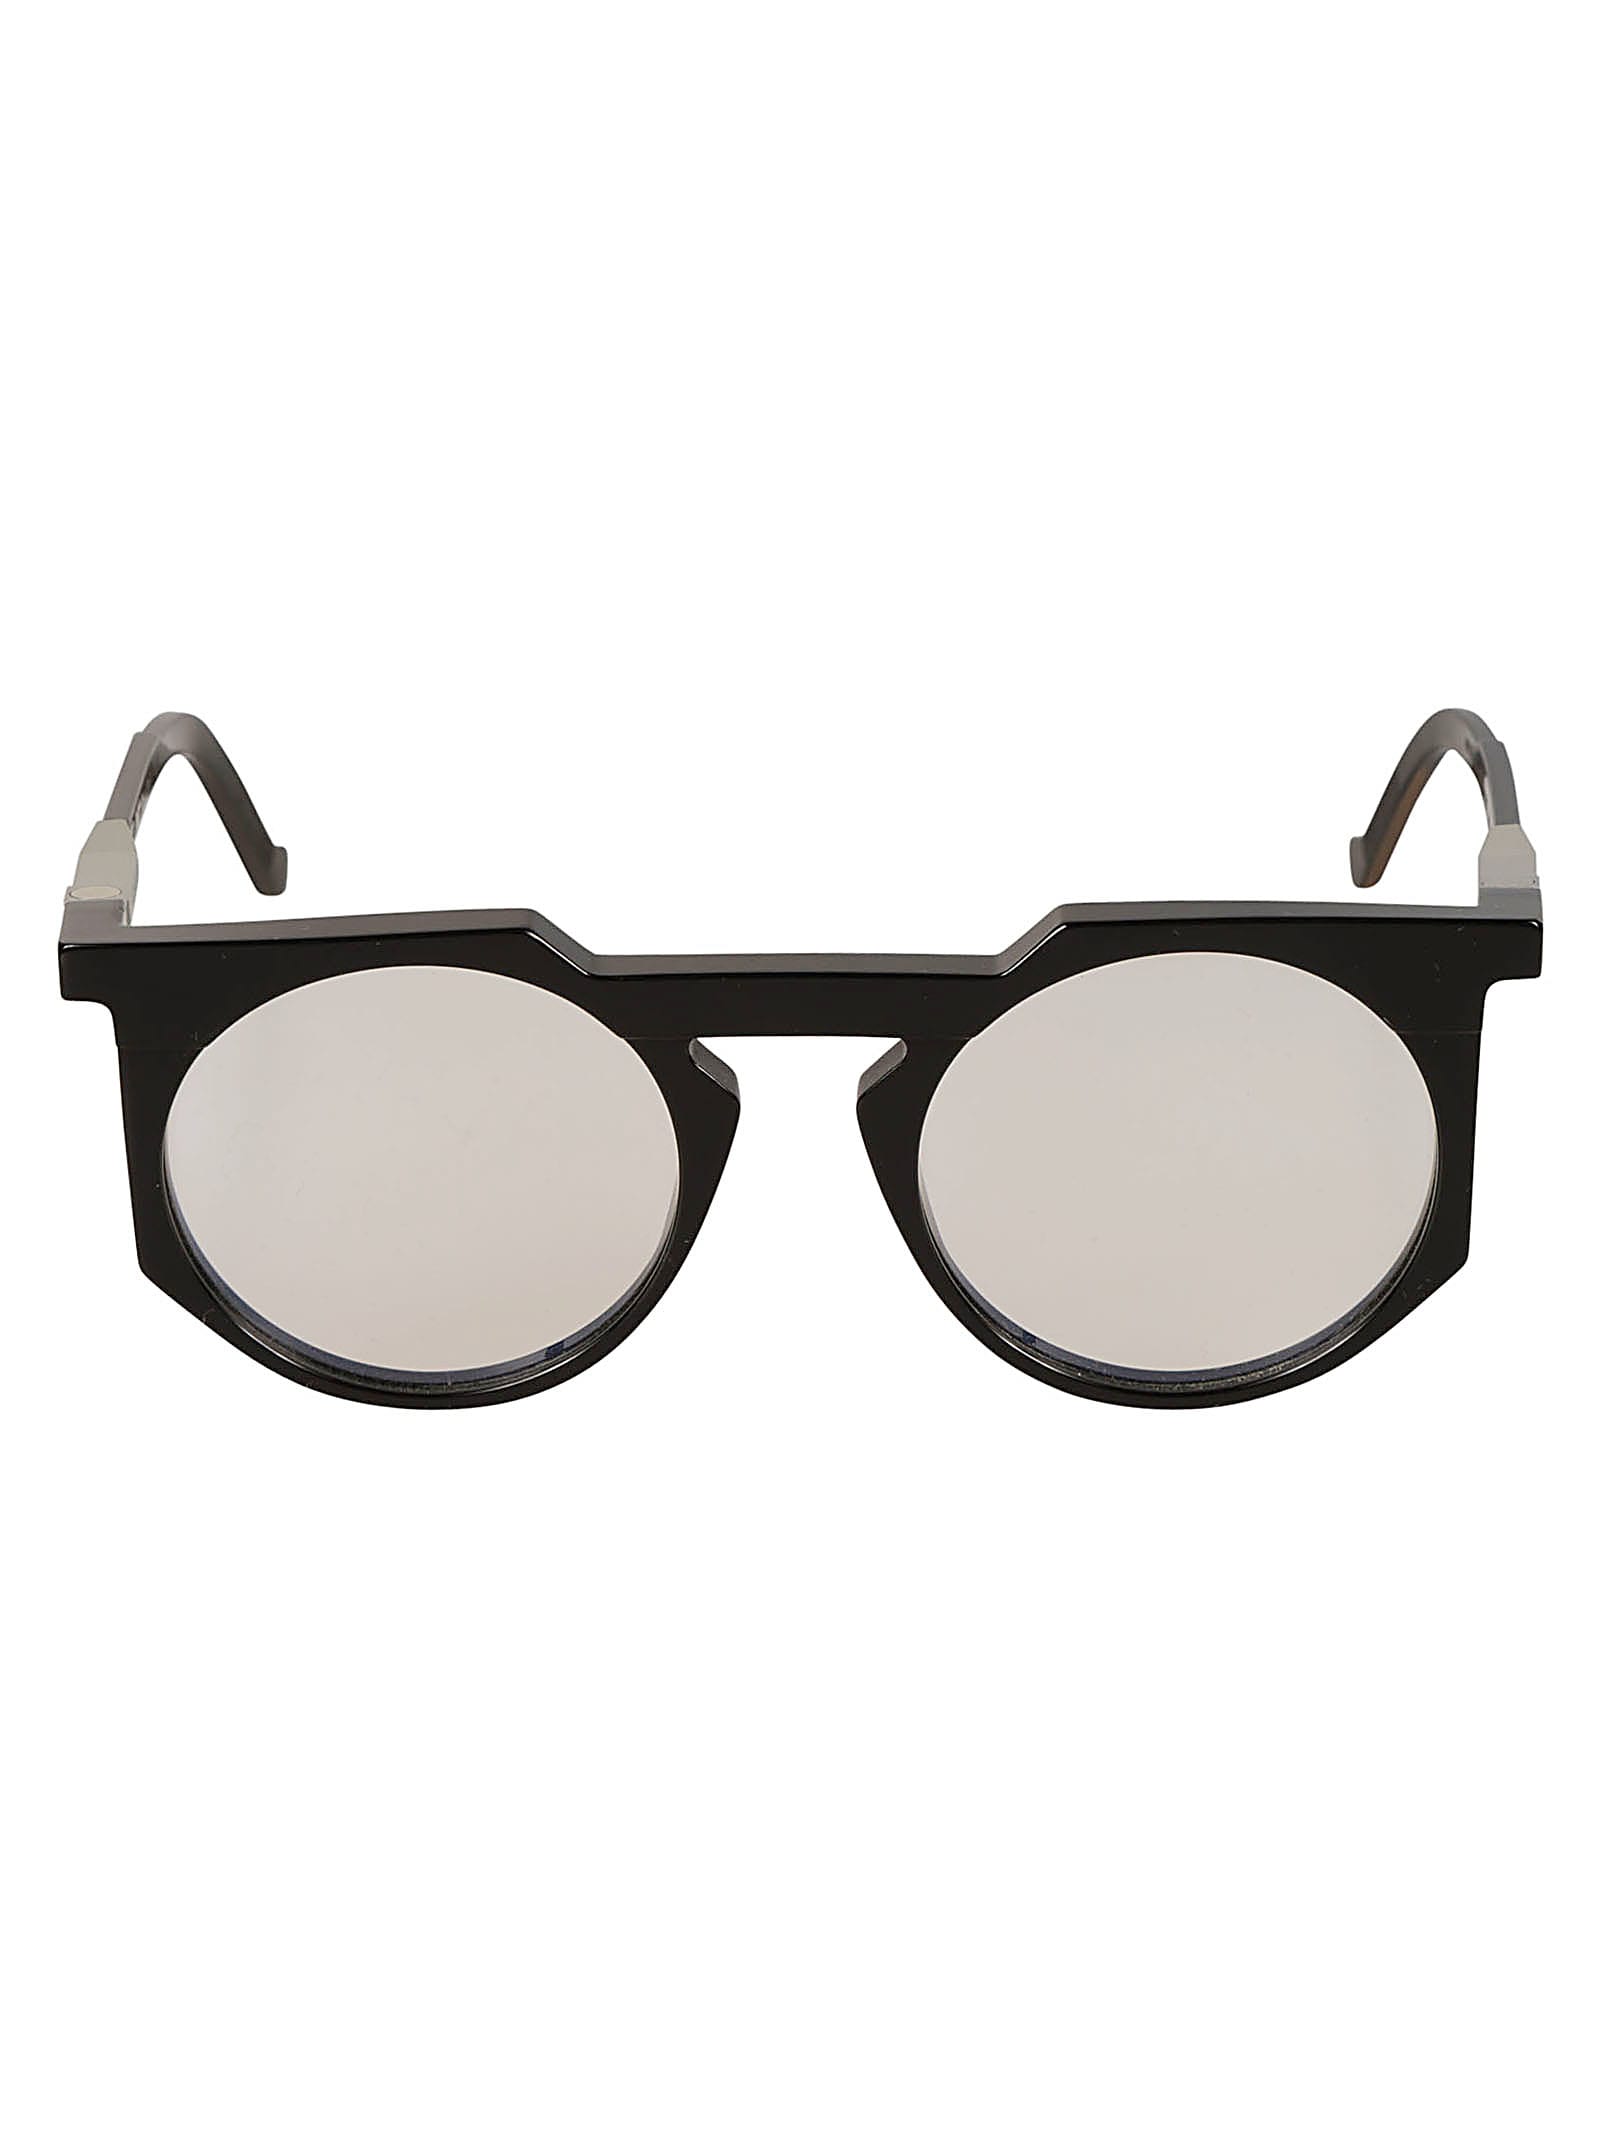 Vava Clear Lens Round Frame Glasses Glasses In Black